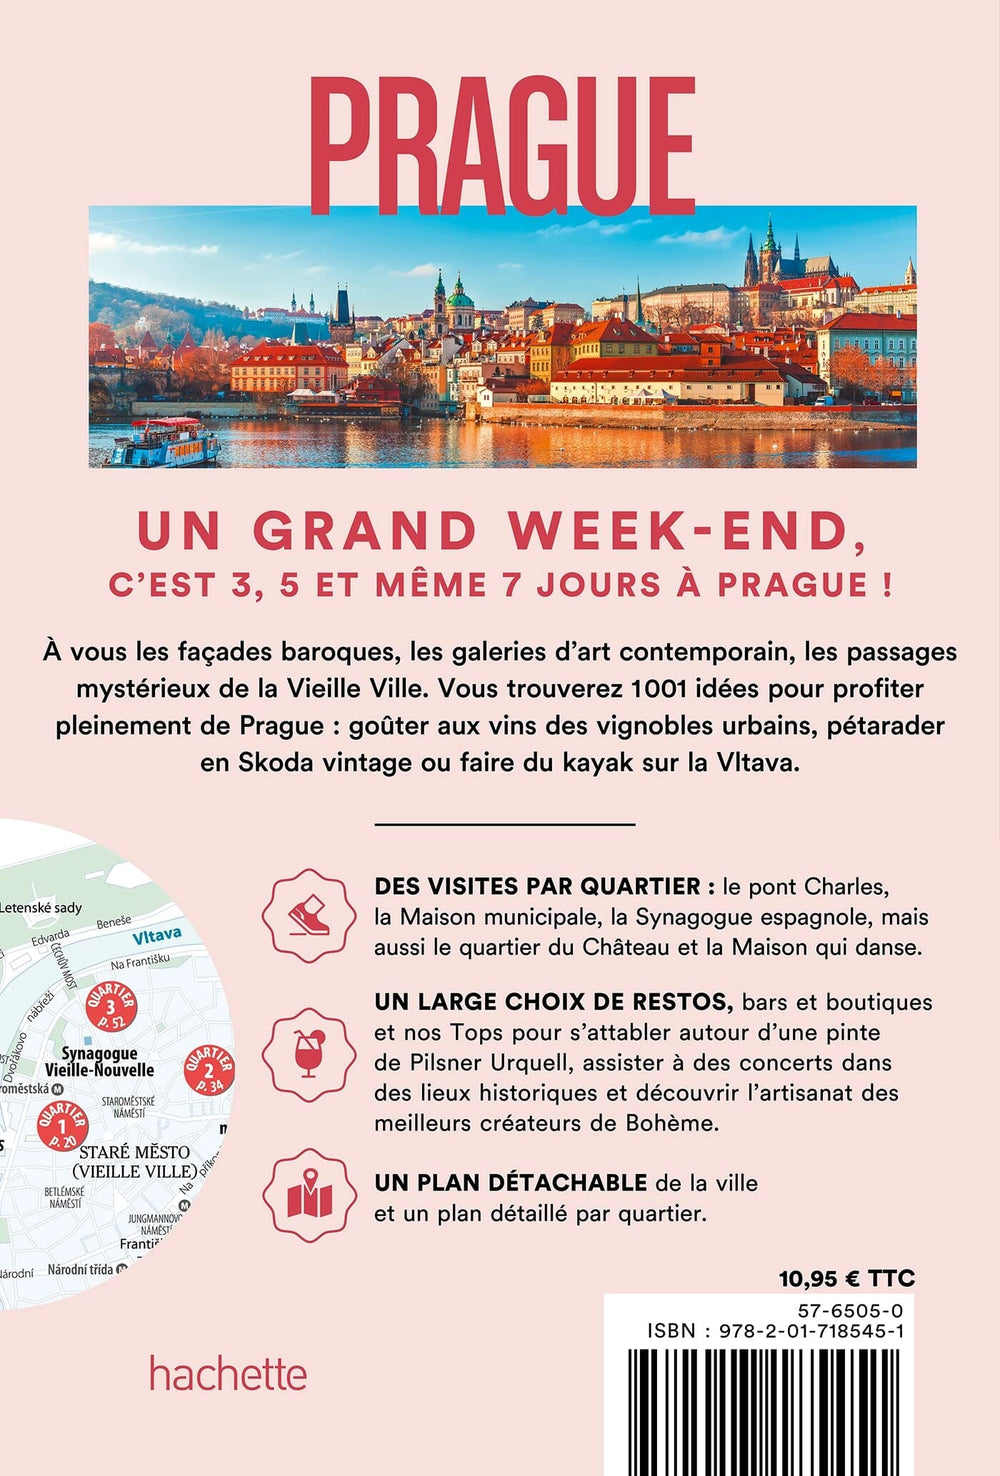 Guide de voyage de poche - Un Grand Week-end à Prague - Édition 2023 | Hachette guide petit format Hachette 